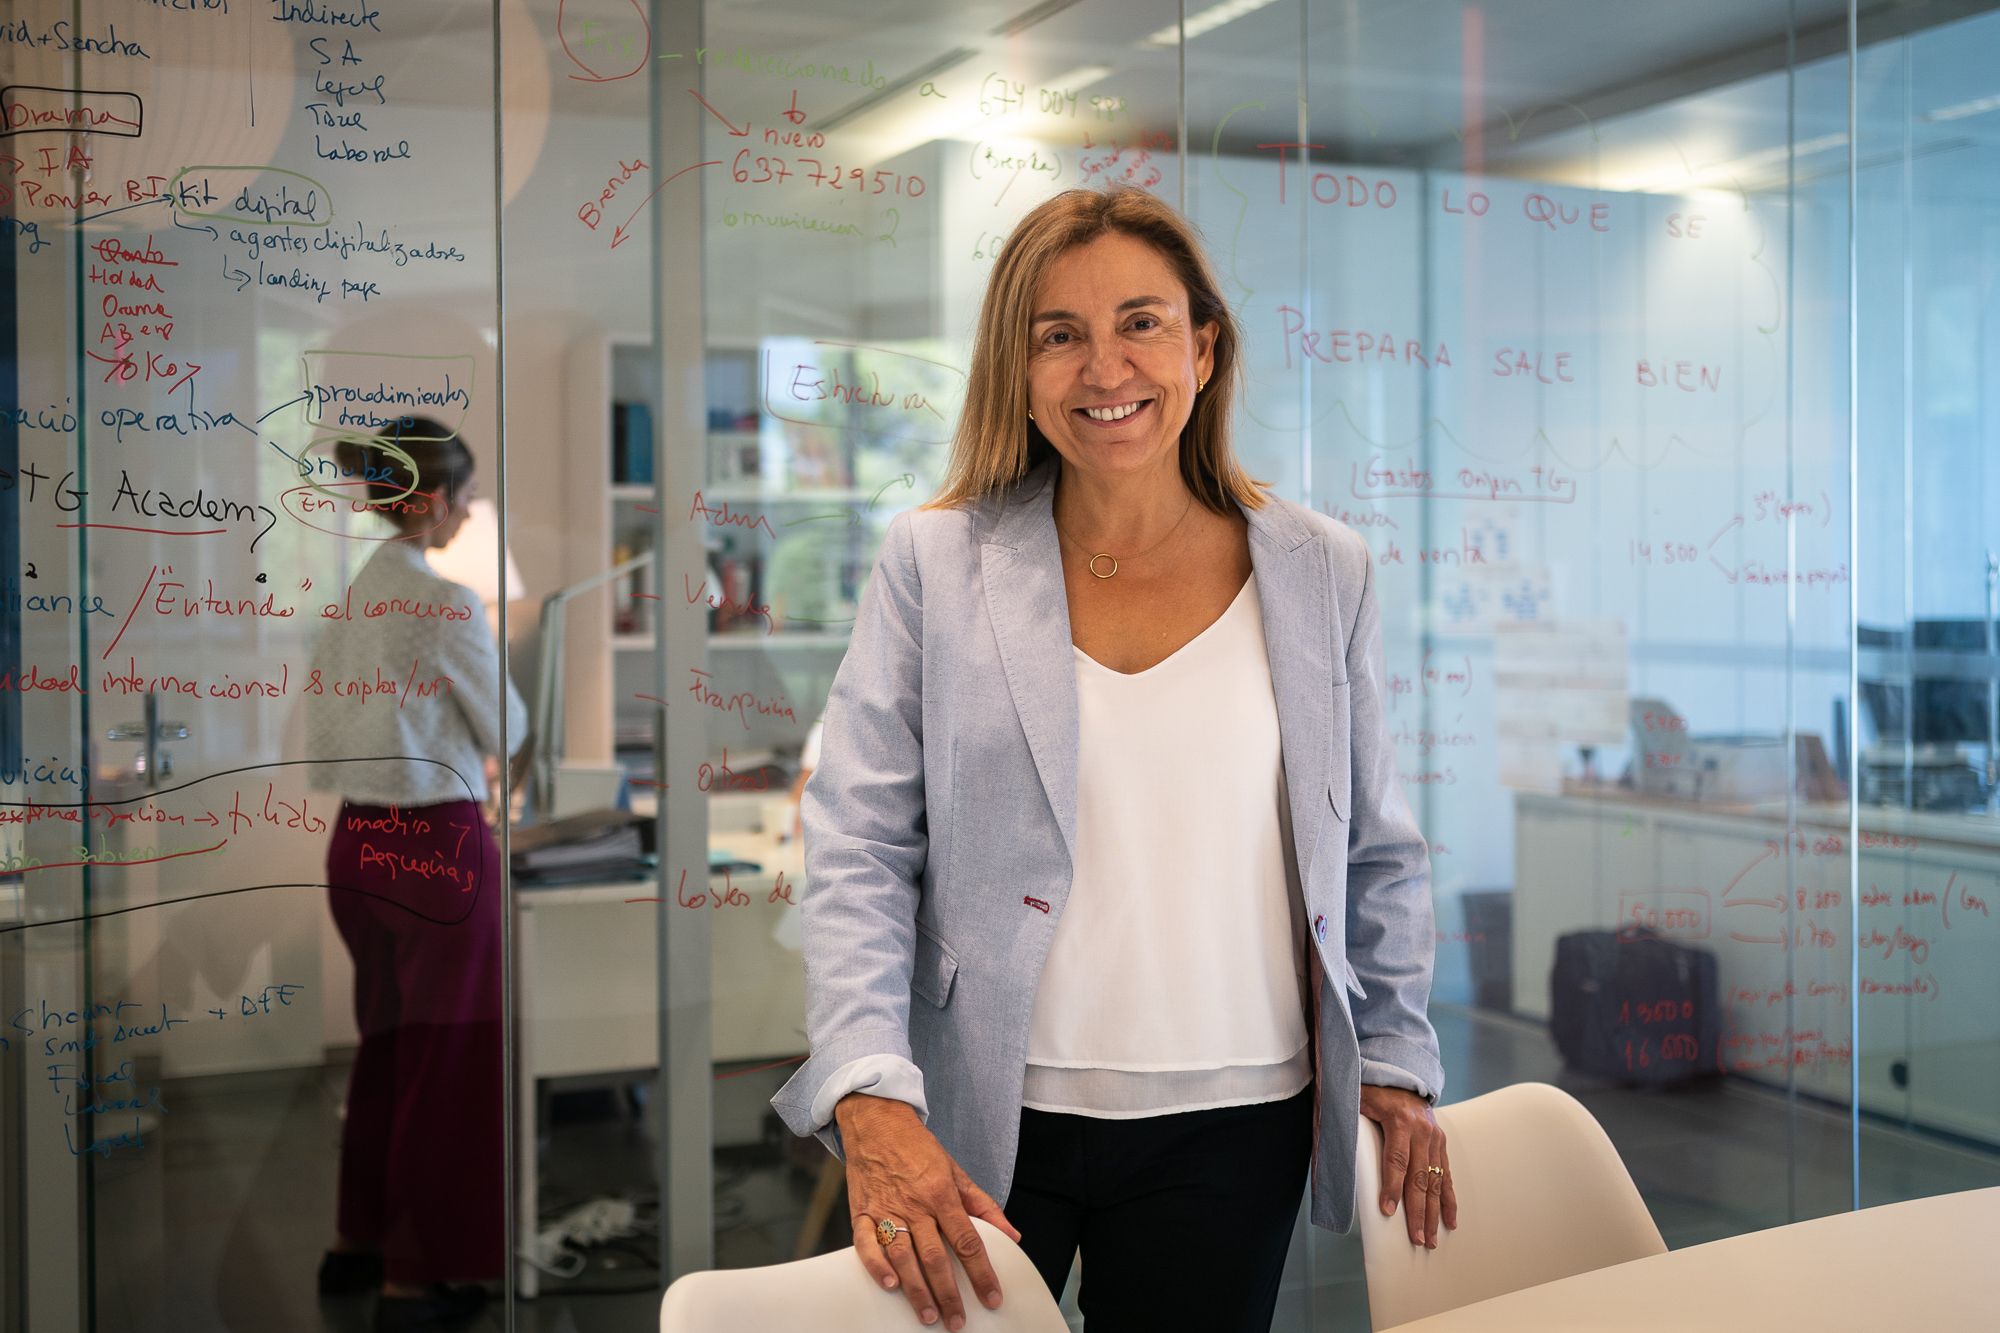 Argelia García té un objectiu clar: "ajudar els CEO inquiets a prendre decisions i encertar" | Mireia Comas